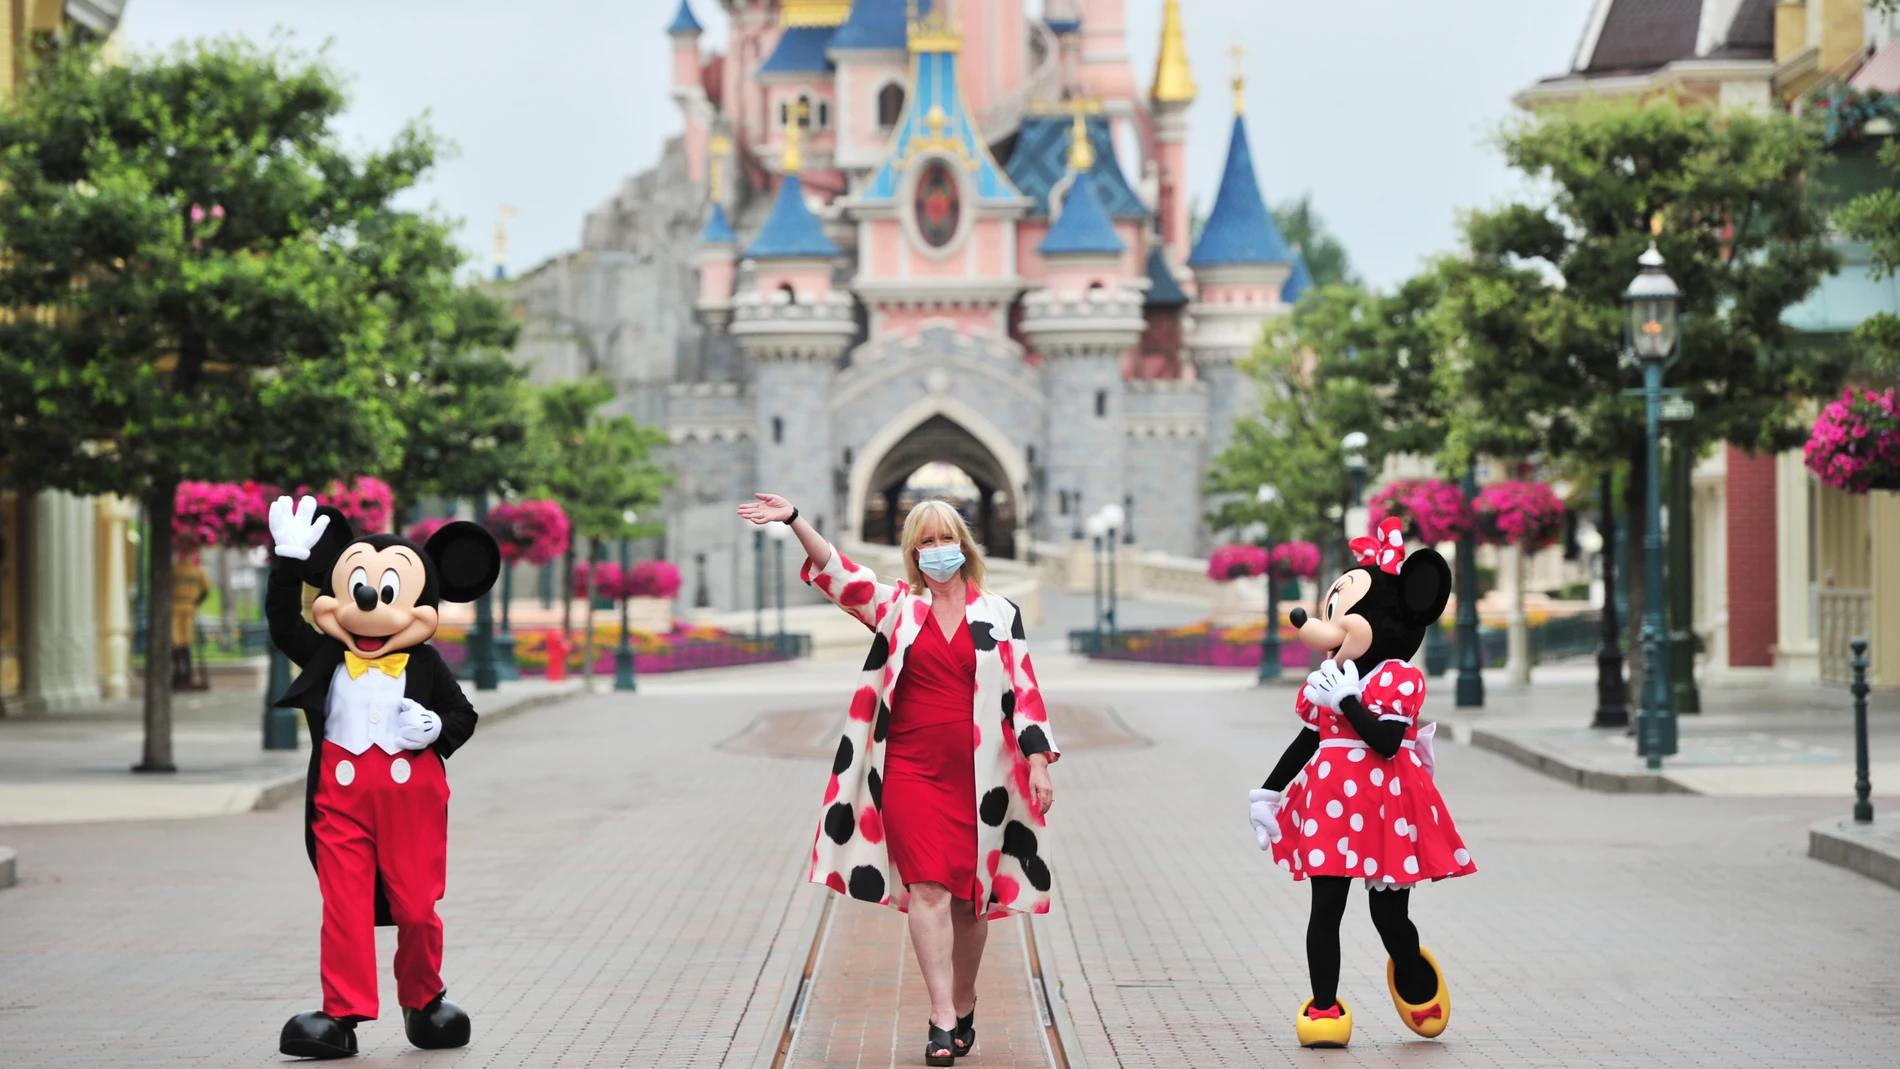 Natacha Rafalski, presidenta de Disneyland Paris, ha sido la encargada de conducir este momento tan especial junto a Mickey y Minnie